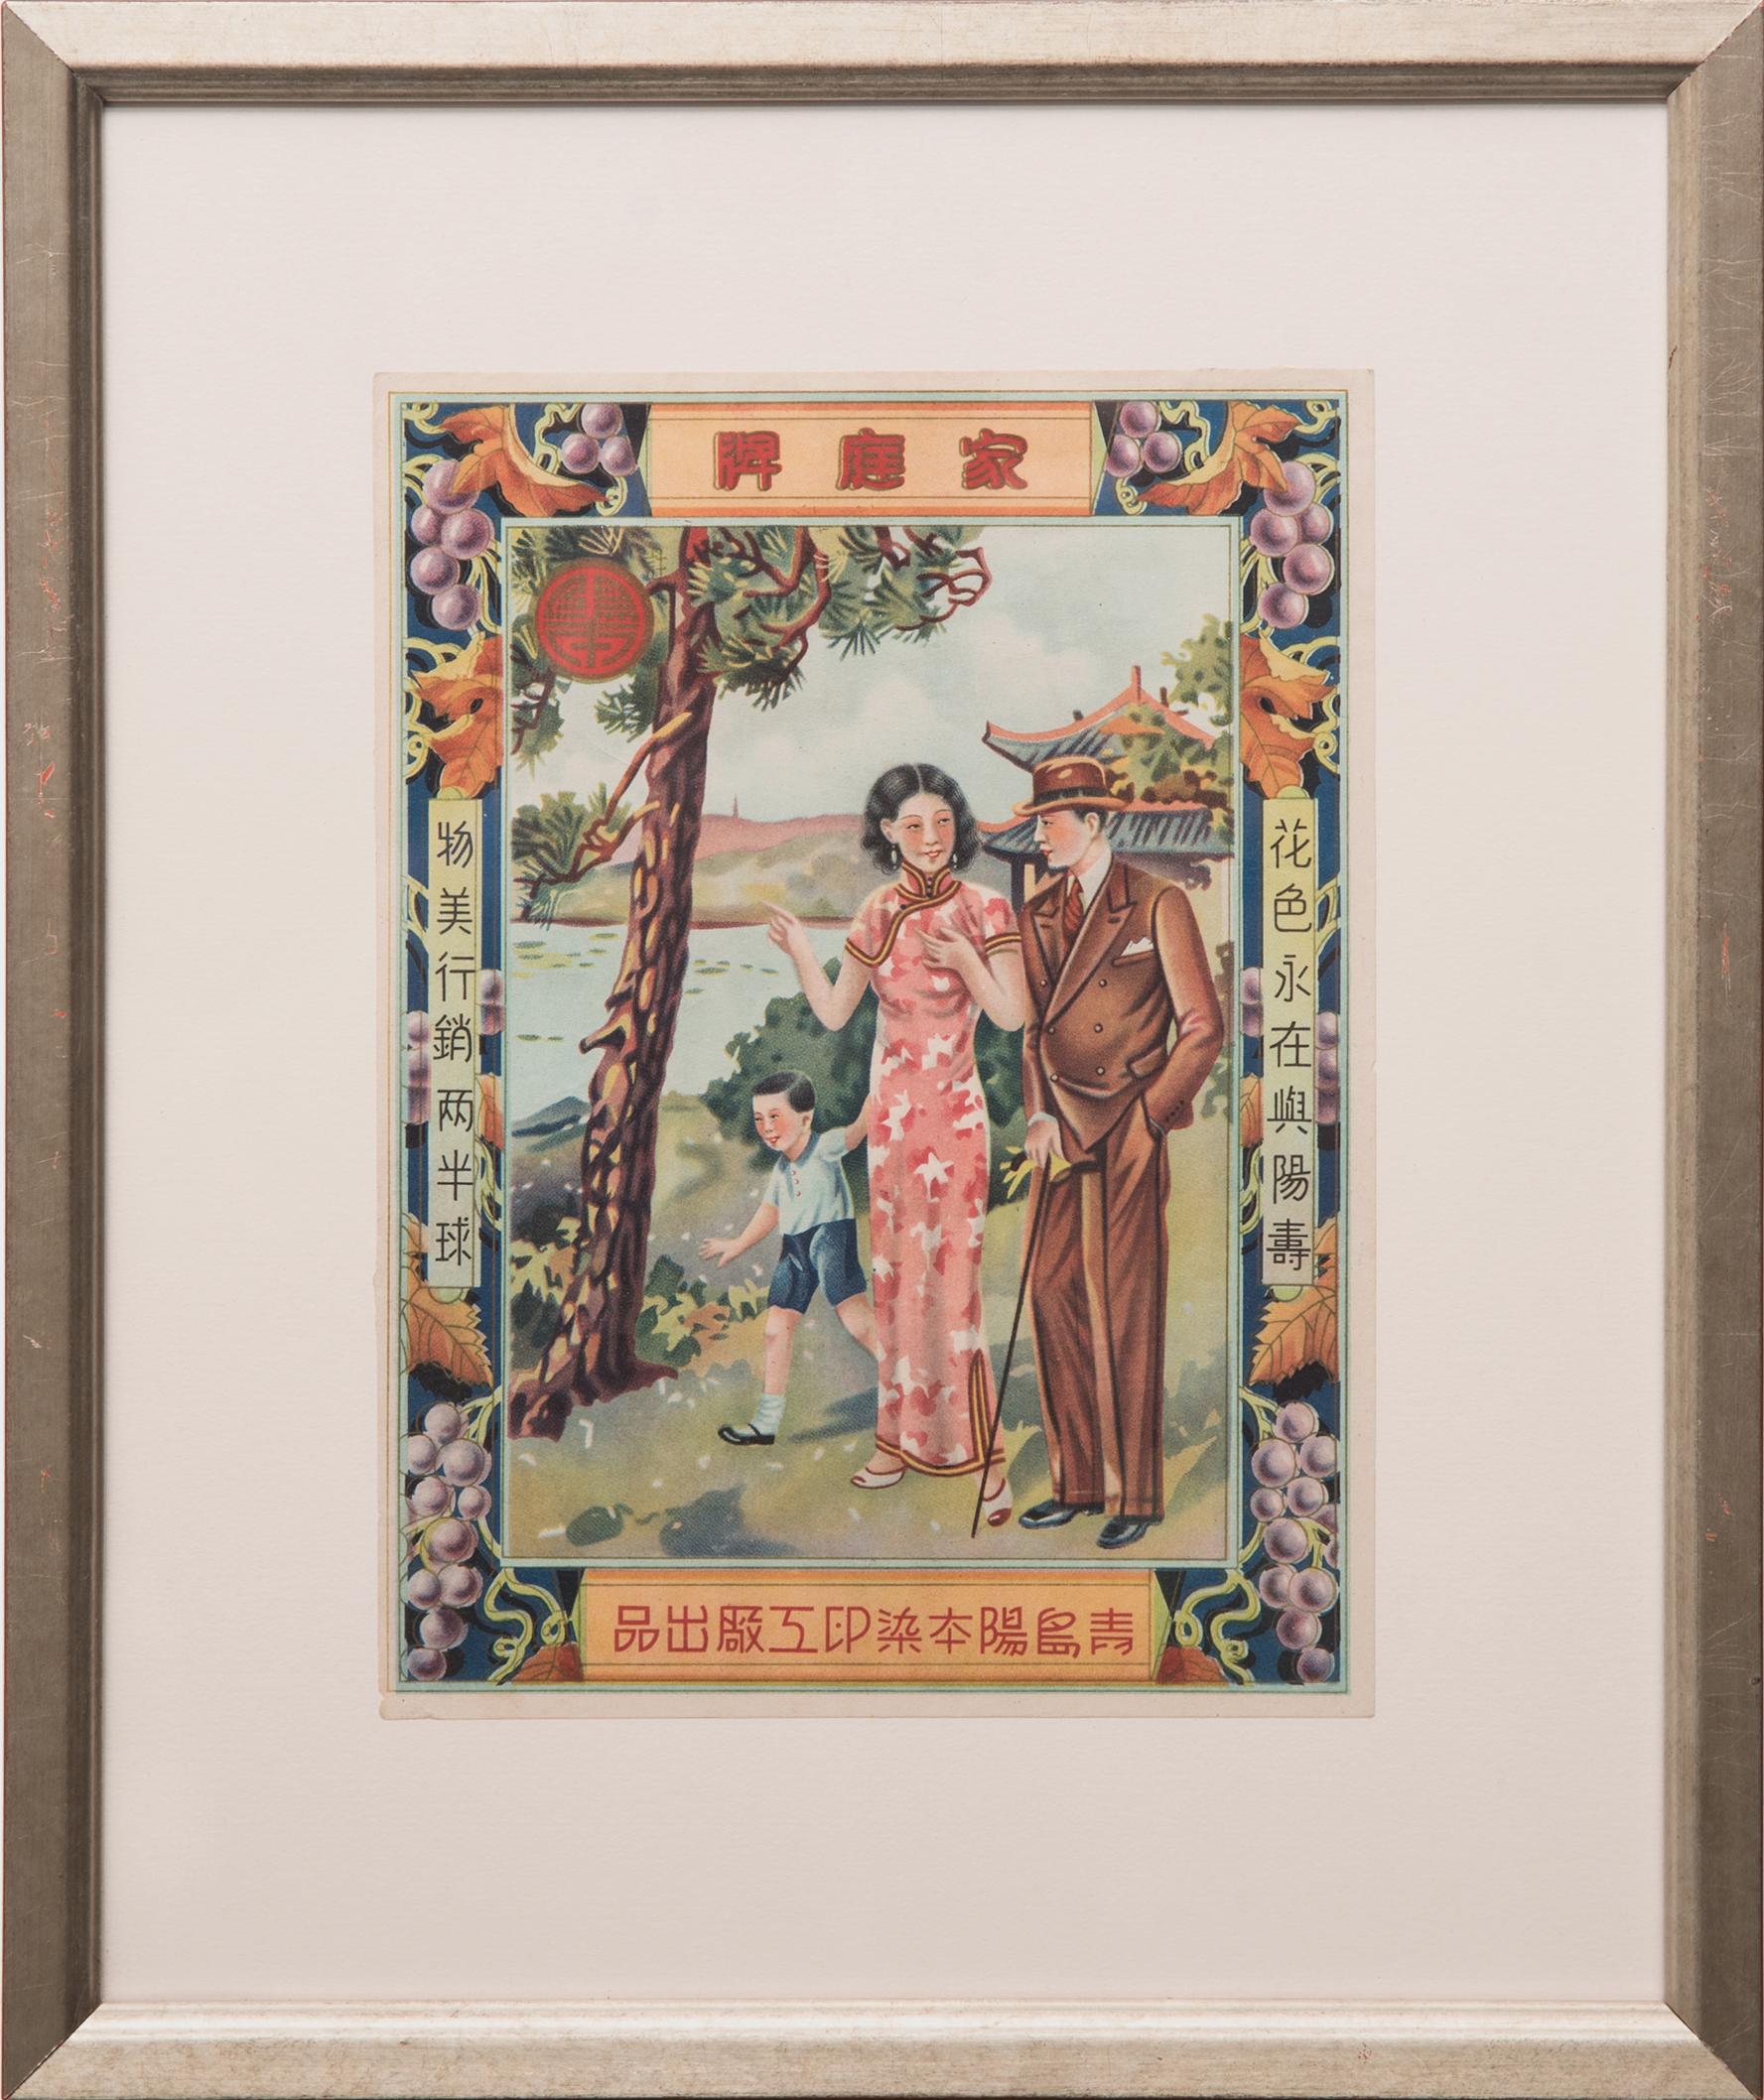 Affiche rétro de la période de la République chinoise